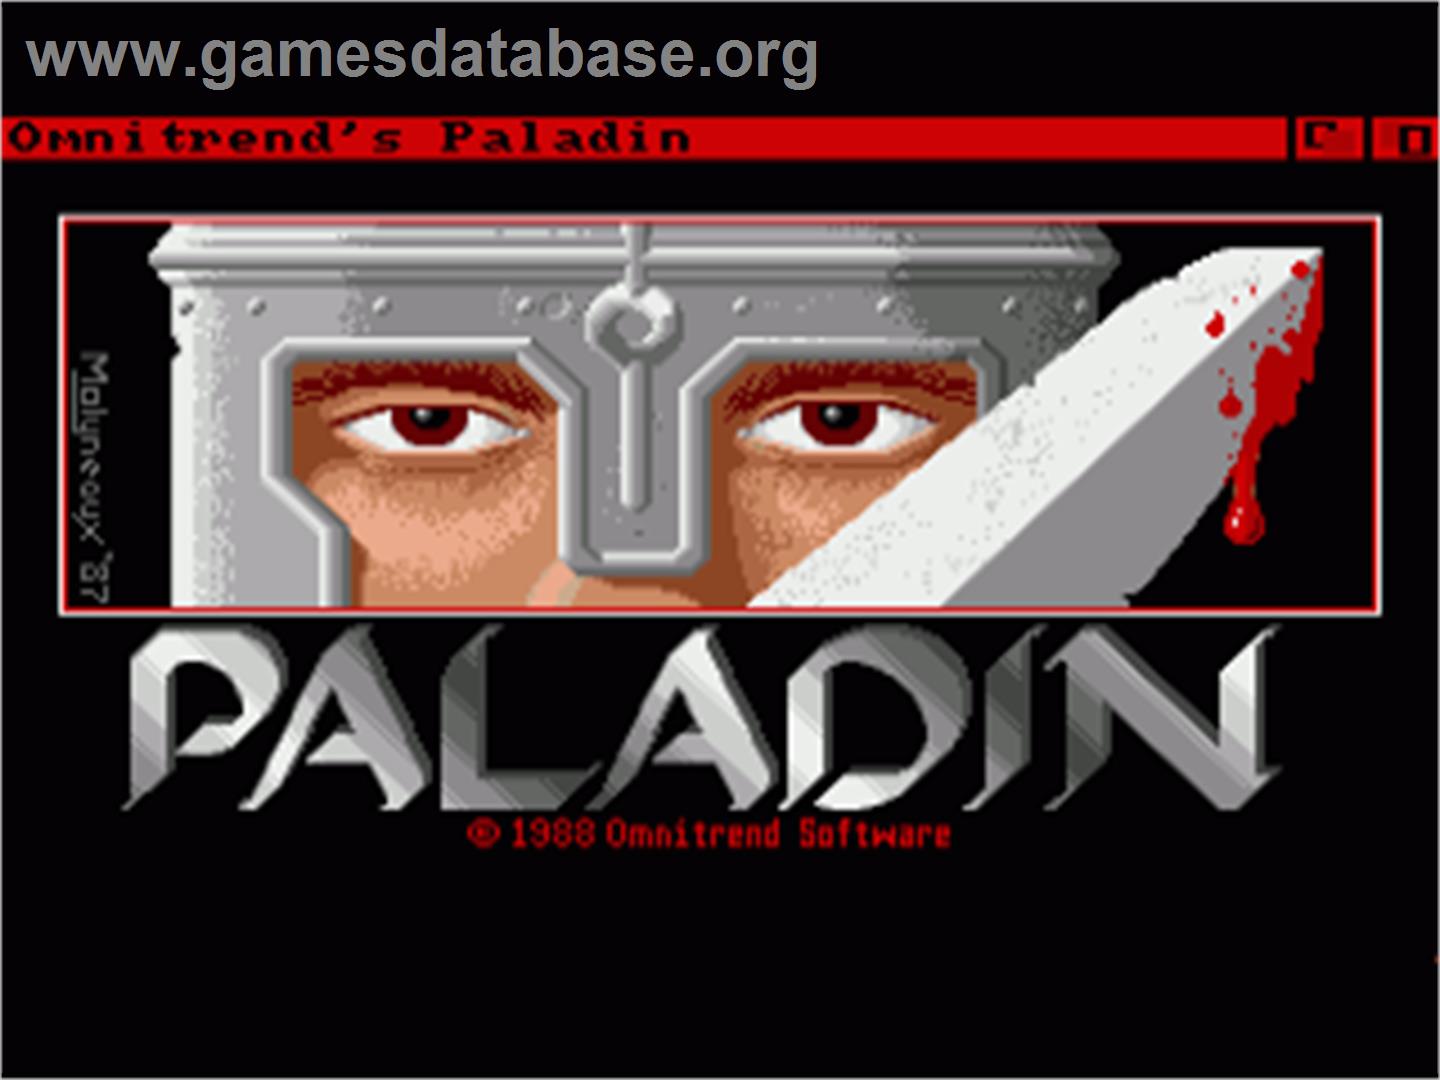 Paladin - Commodore Amiga - Artwork - In Game